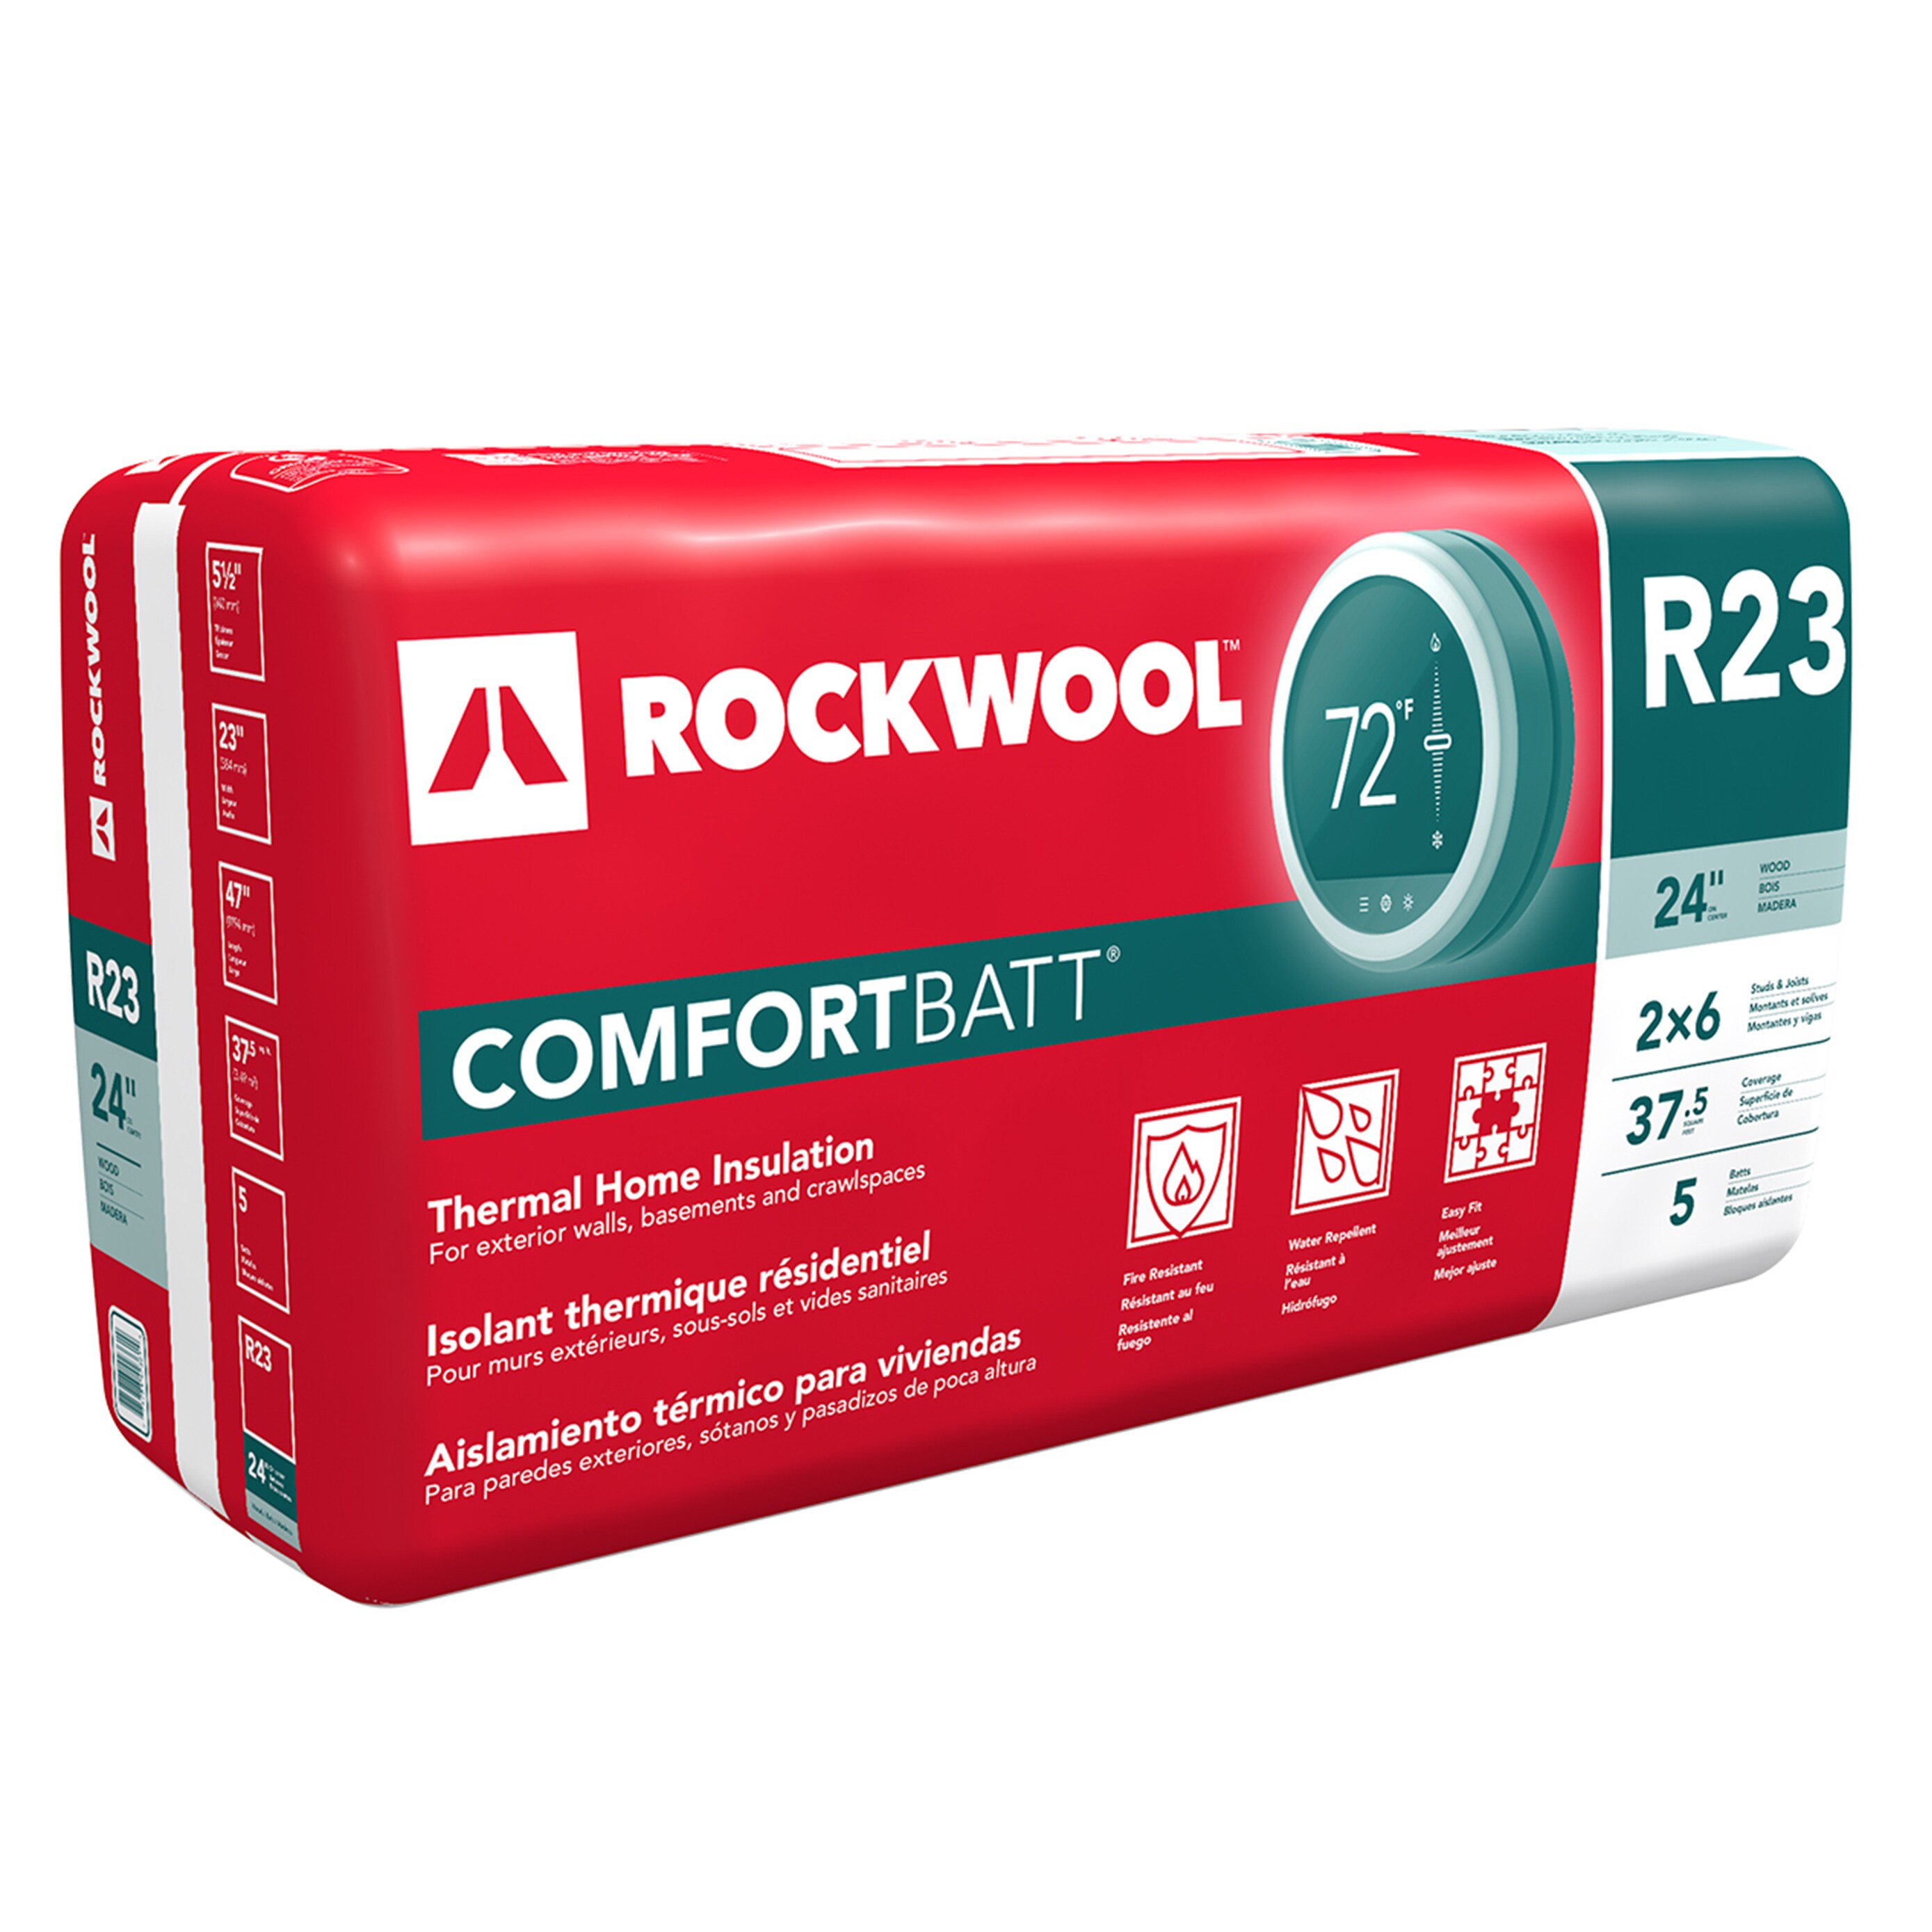 ROULROCK KRAFT (121) Rock wool thermal insulation felt By ROCKWOOL